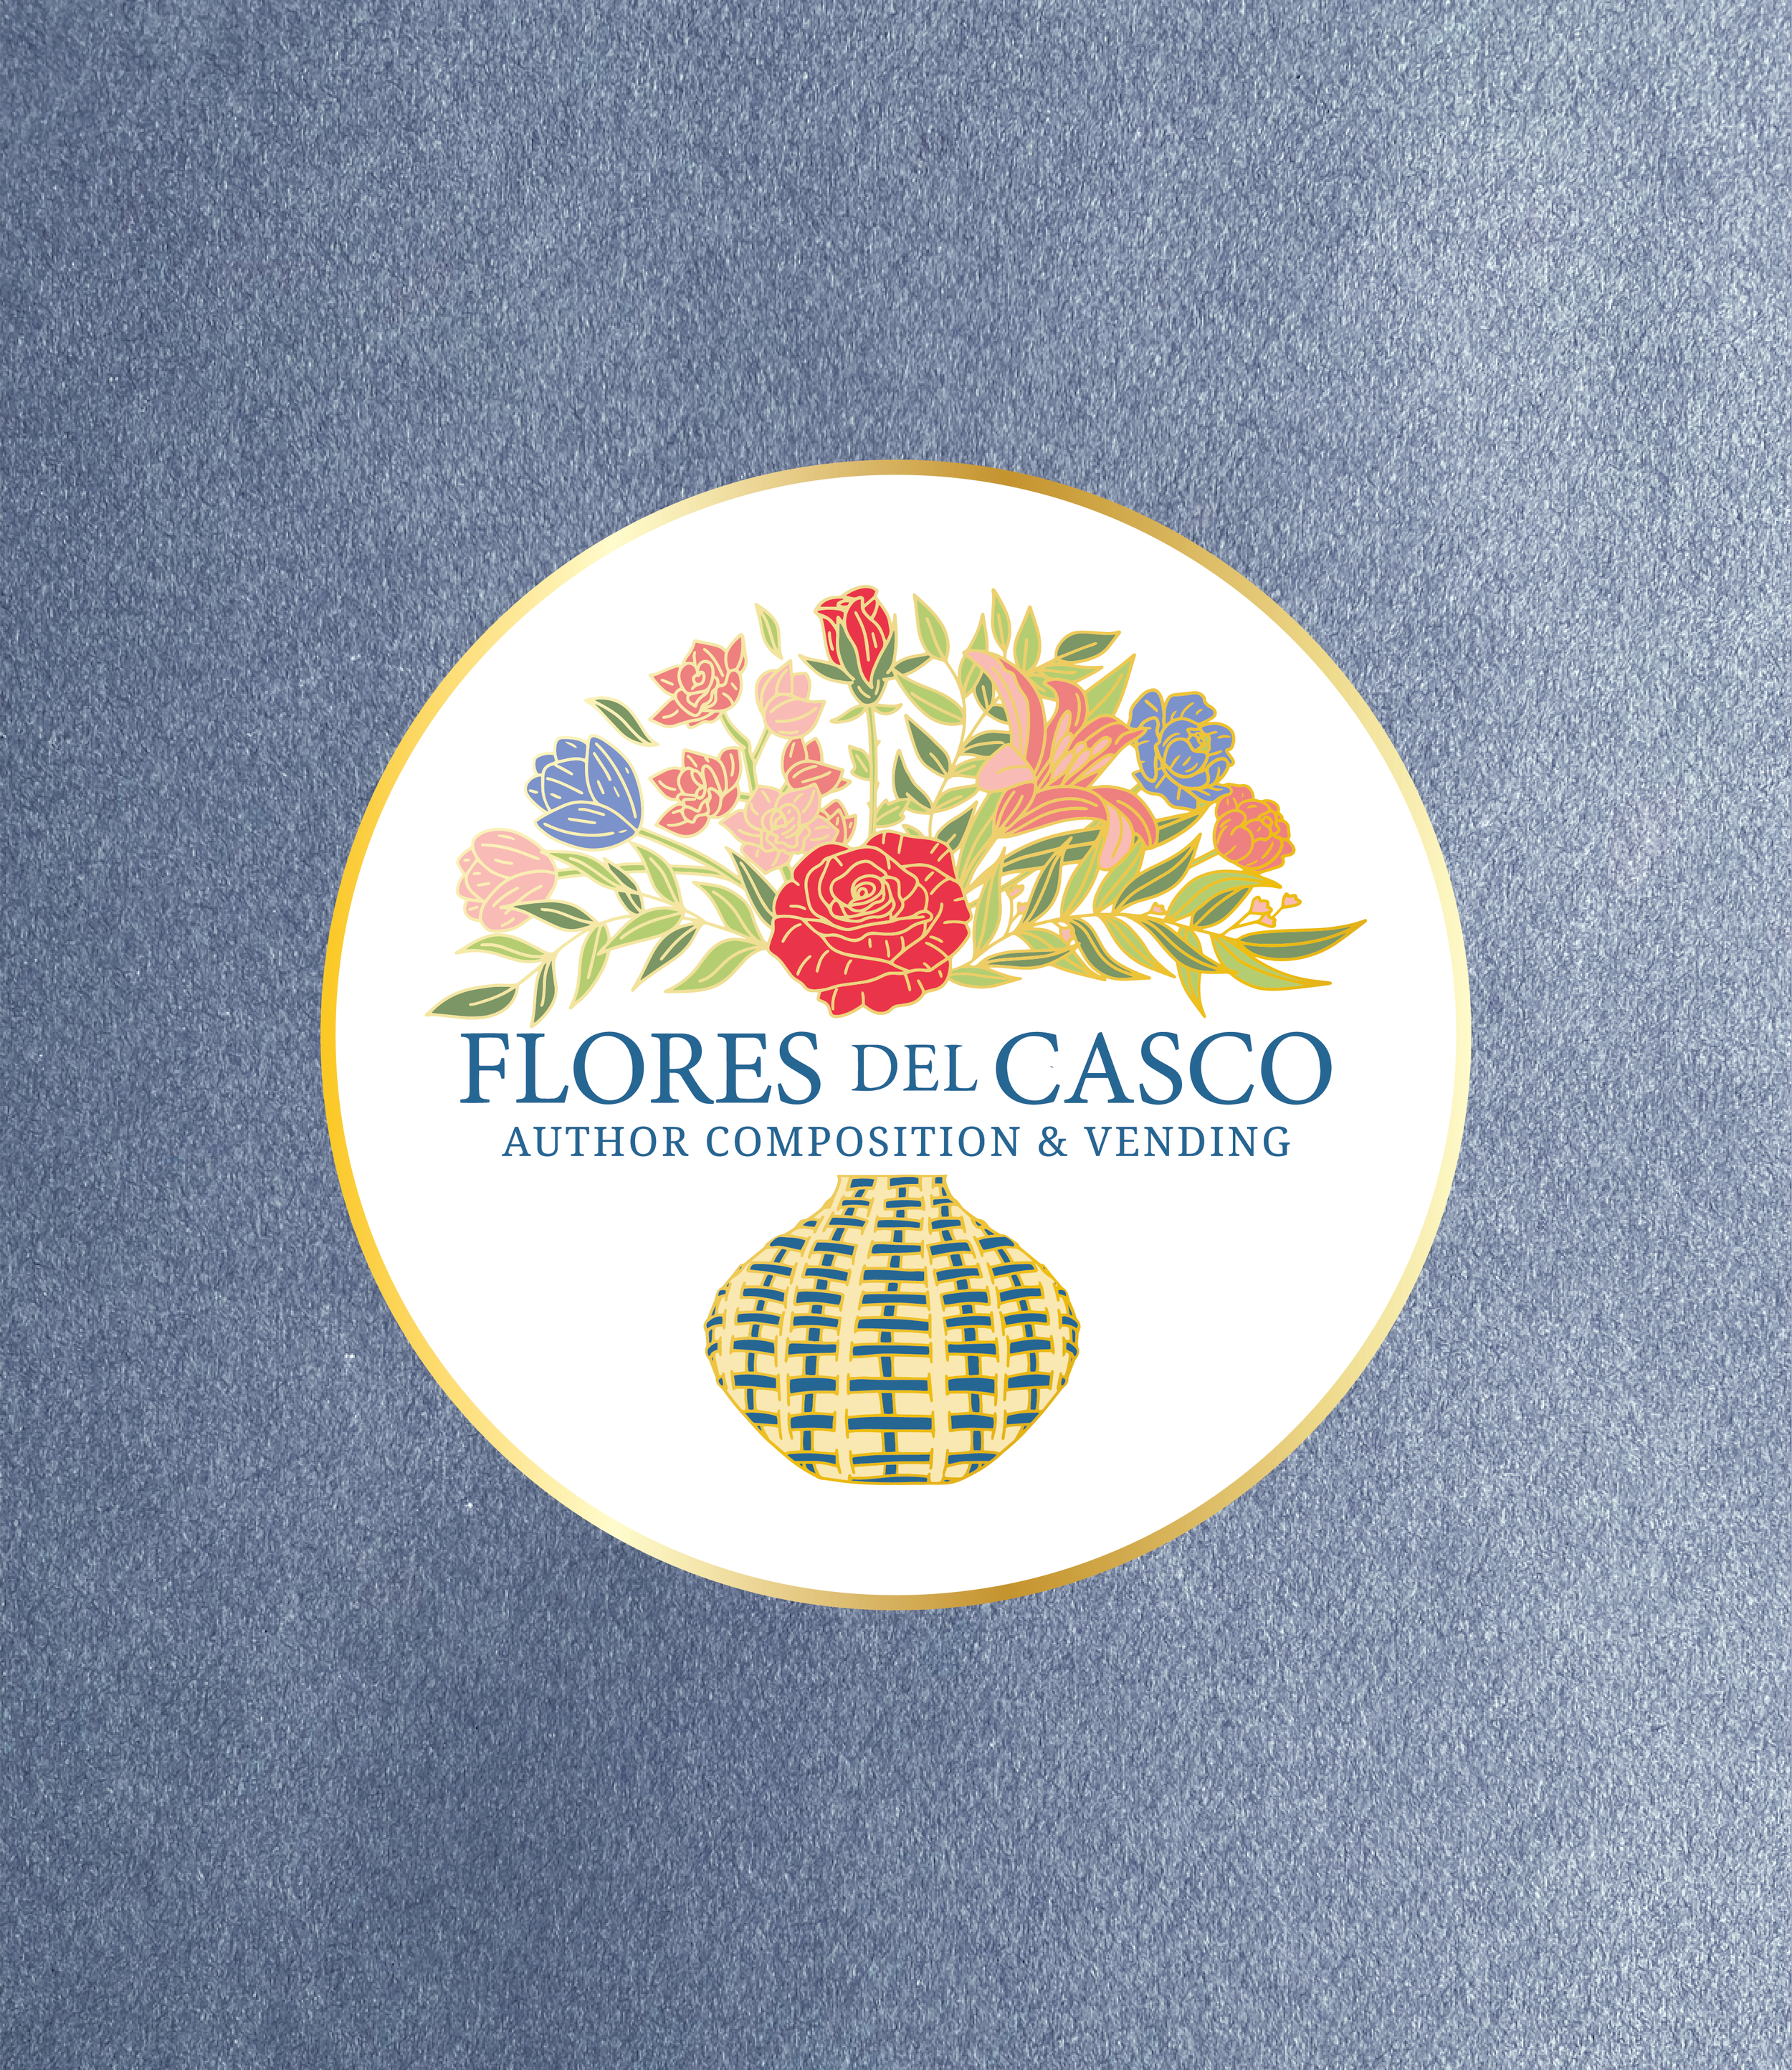 Flores del Casco_circle logo-01.png